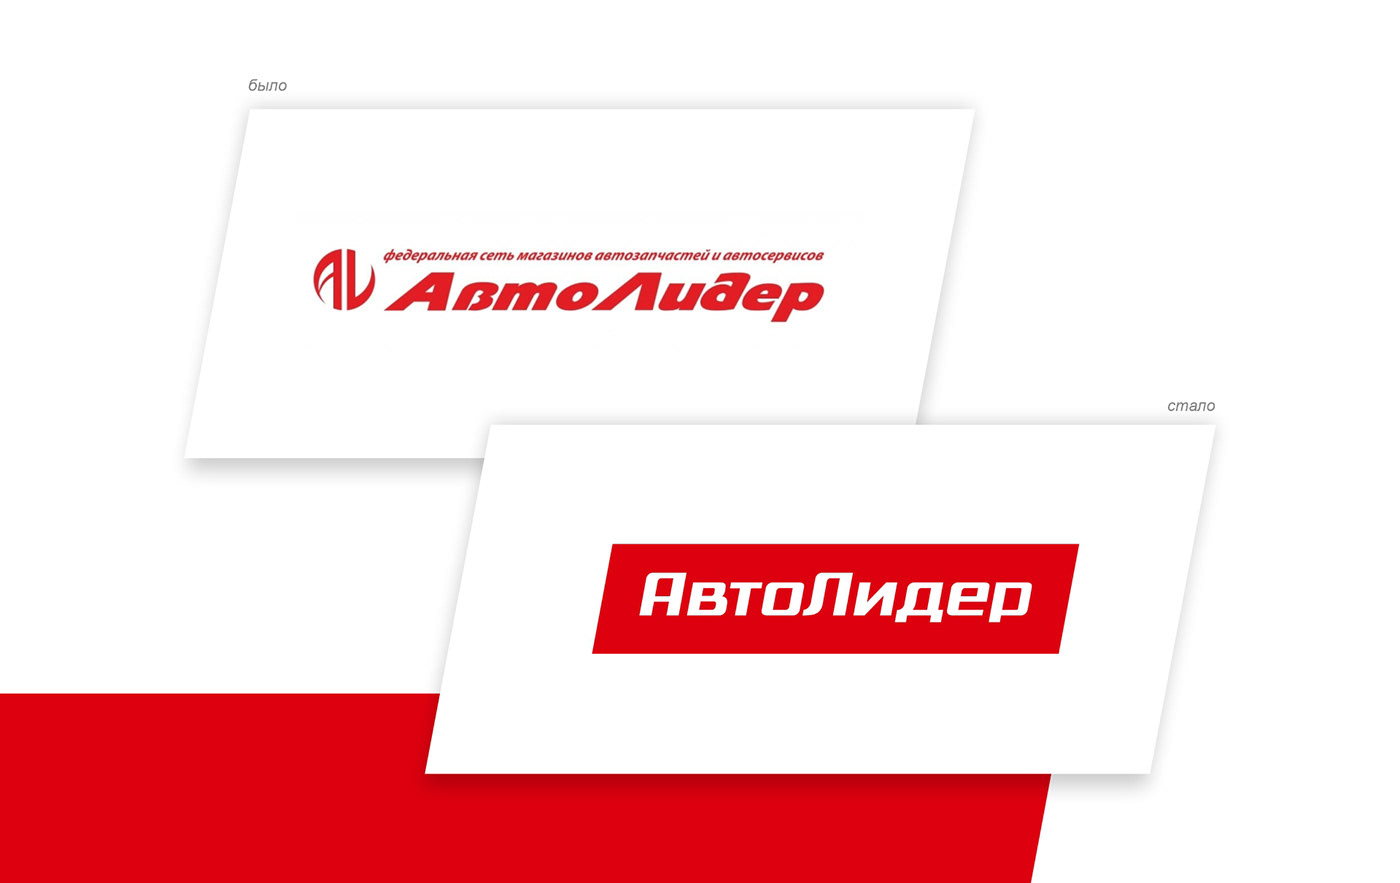 Auto autoservice brand identity color branding  logo graphic design 